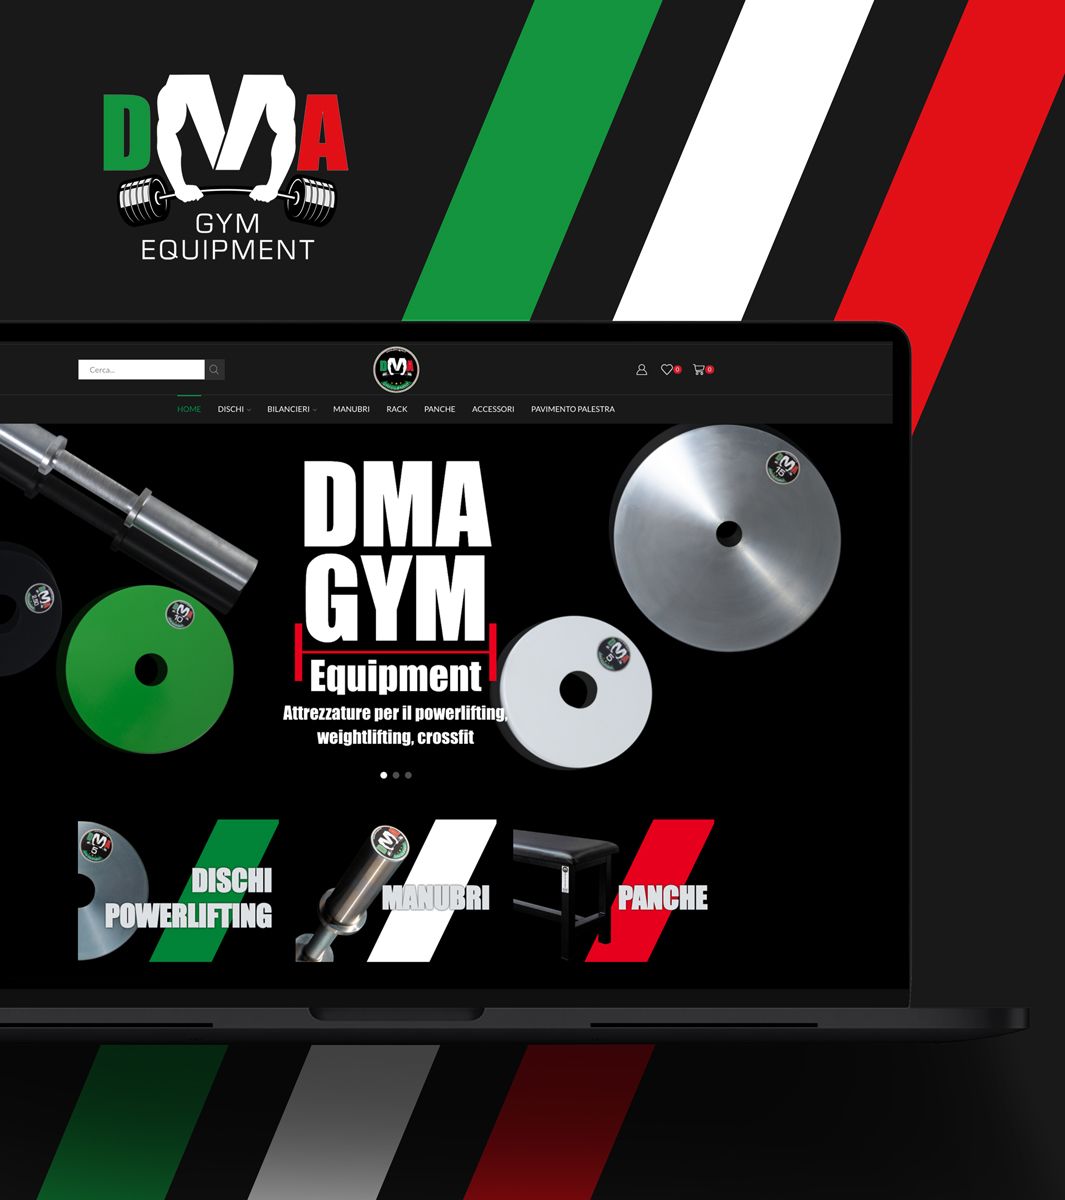 DMA - GYM Equipment - sito e-commerce realizzato da RM per comunicare